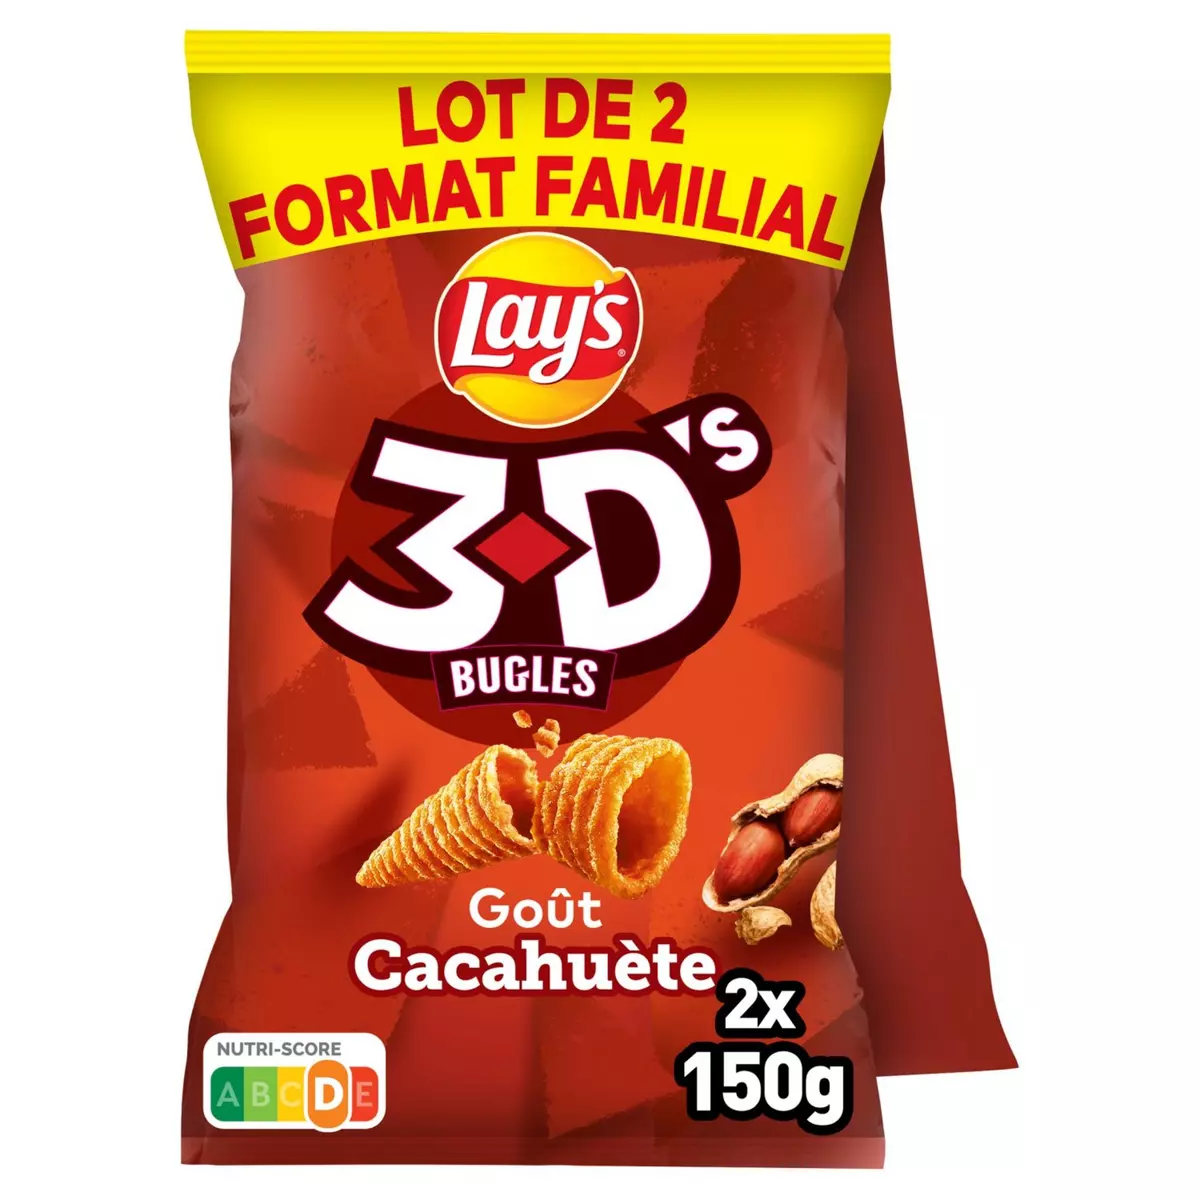 LAY'S Biscuits soufflés 3D's goût cacahuète format familial 2x150g